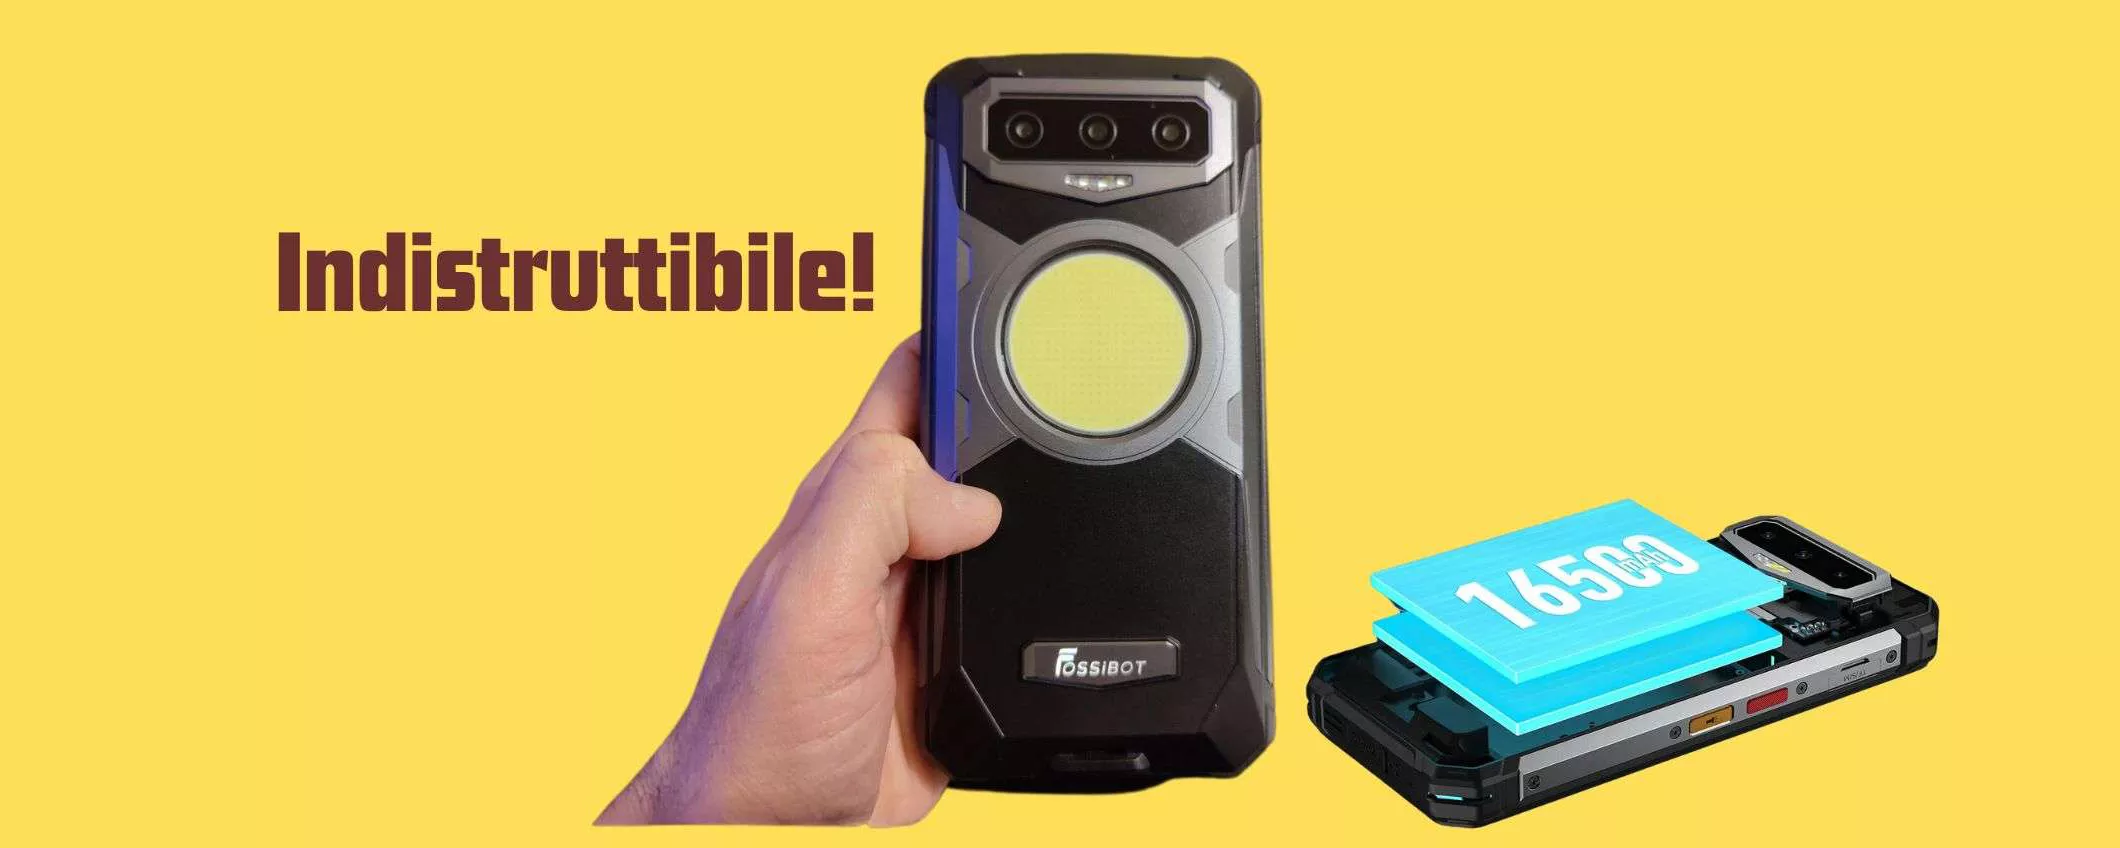 Fossibot F102: lo smartphone rugged economico che illumina la notte